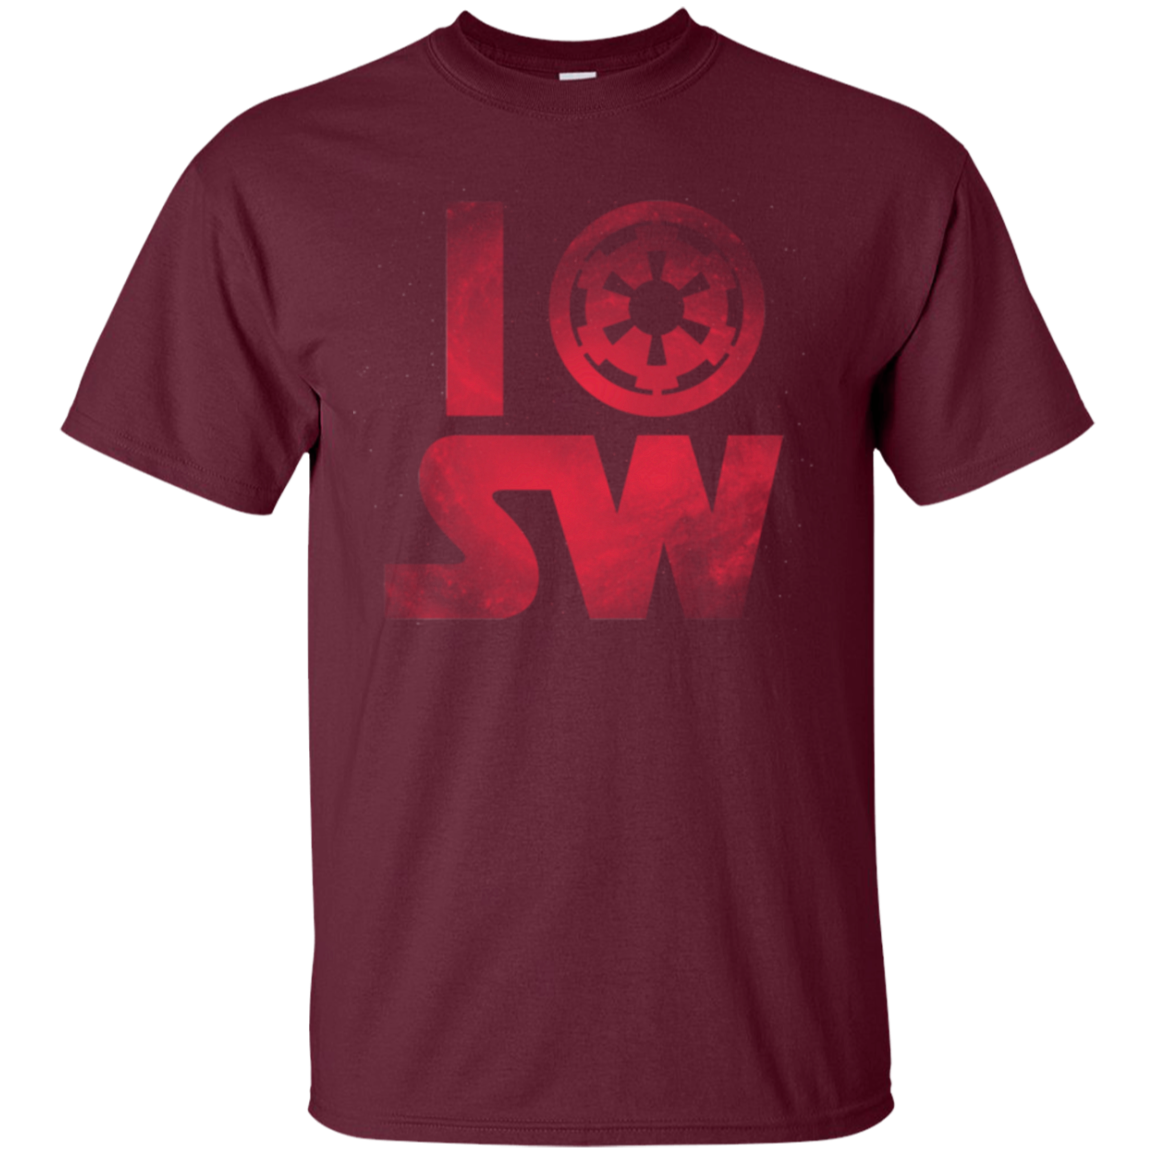 I Empire SW T-Shirt